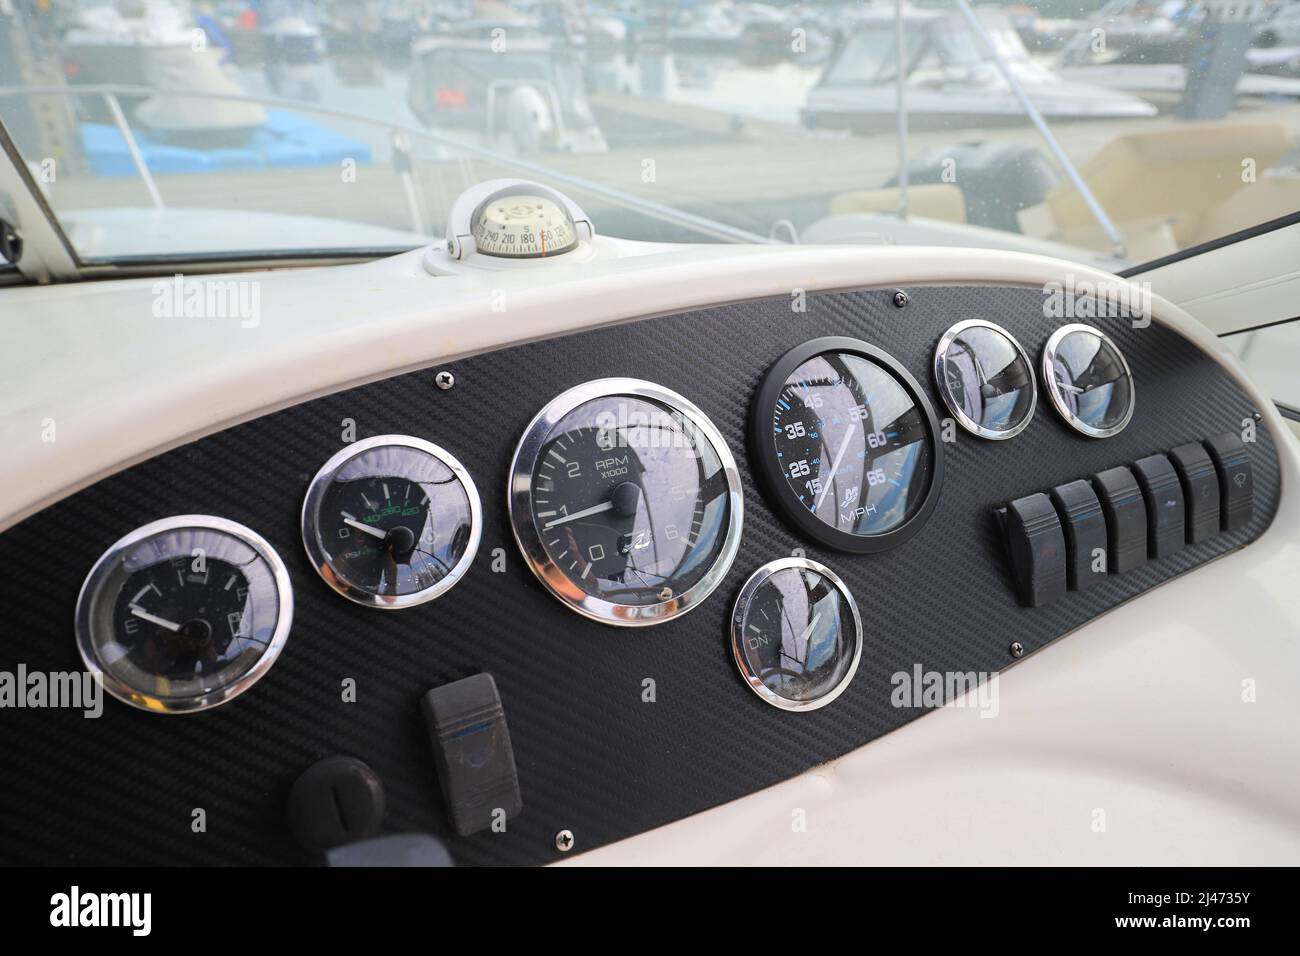 Boat dashboard immagini e fotografie stock ad alta risoluzione - Alamy